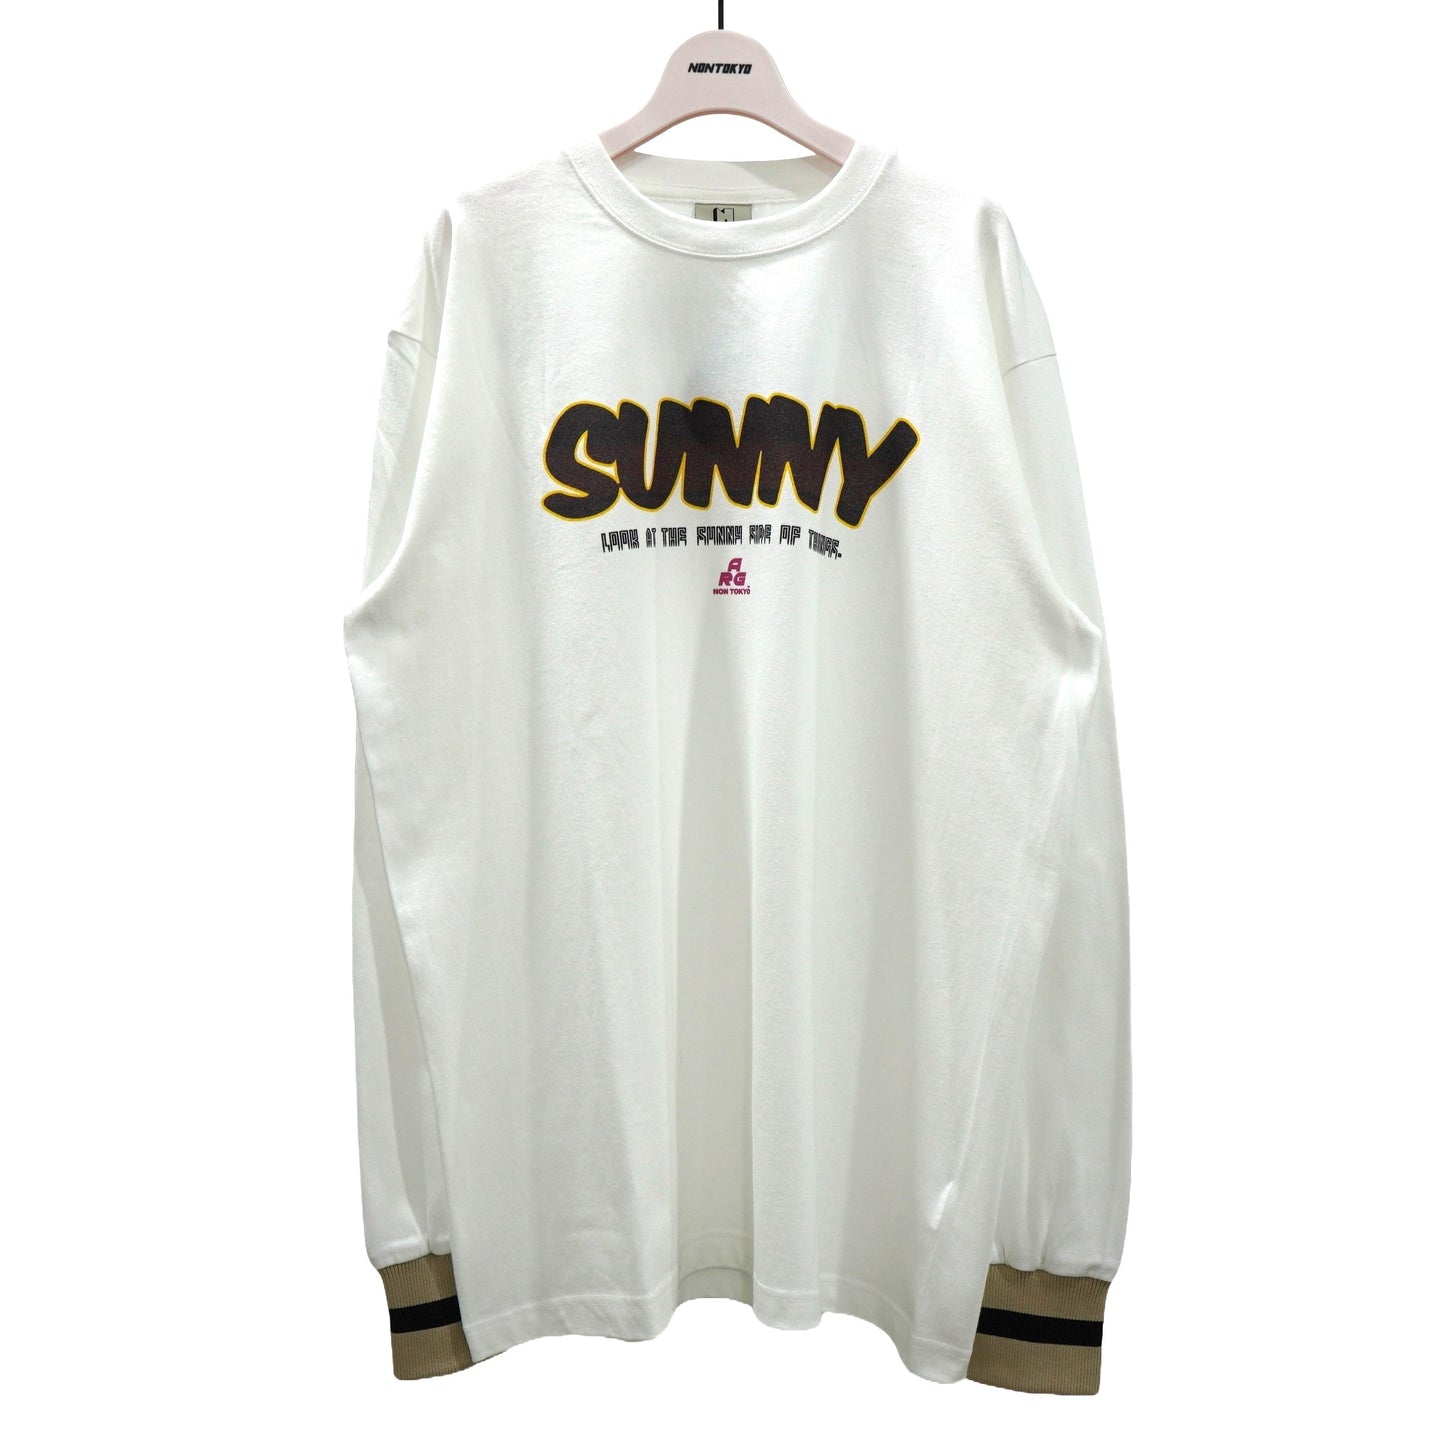 NON TOKYO / SUNNY LONG T/S (WHITE) / 〈ノントーキョー〉サニー長袖Tシャツ (ホワイト)